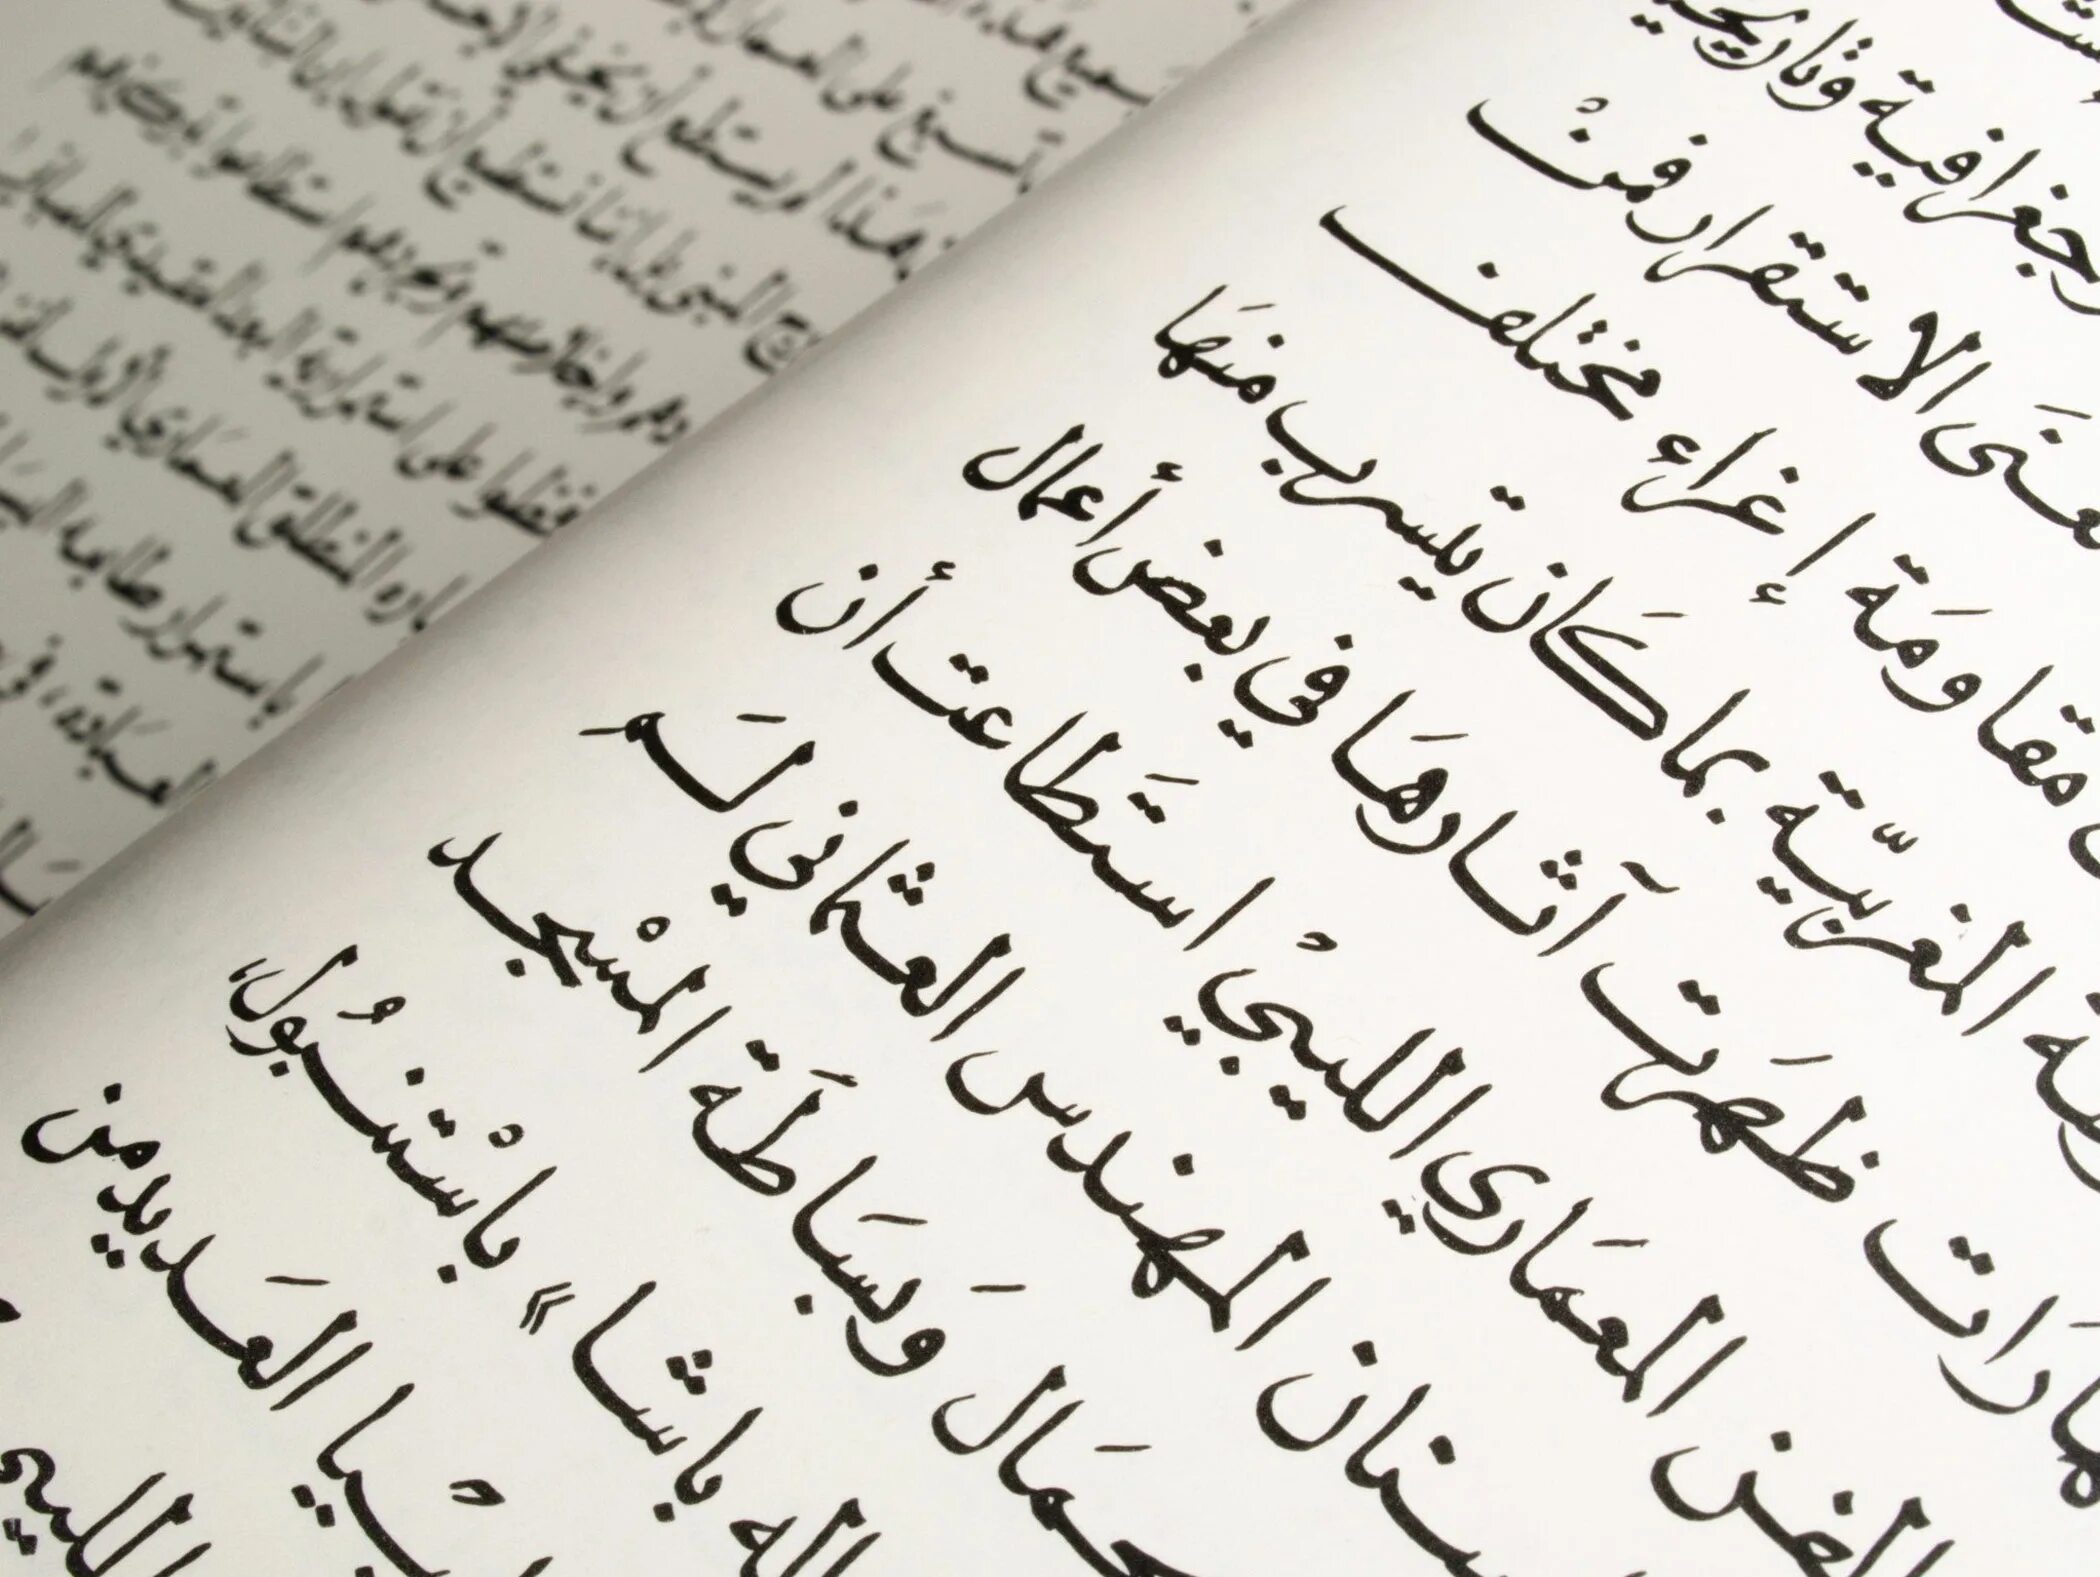 Языки похожие на арабский